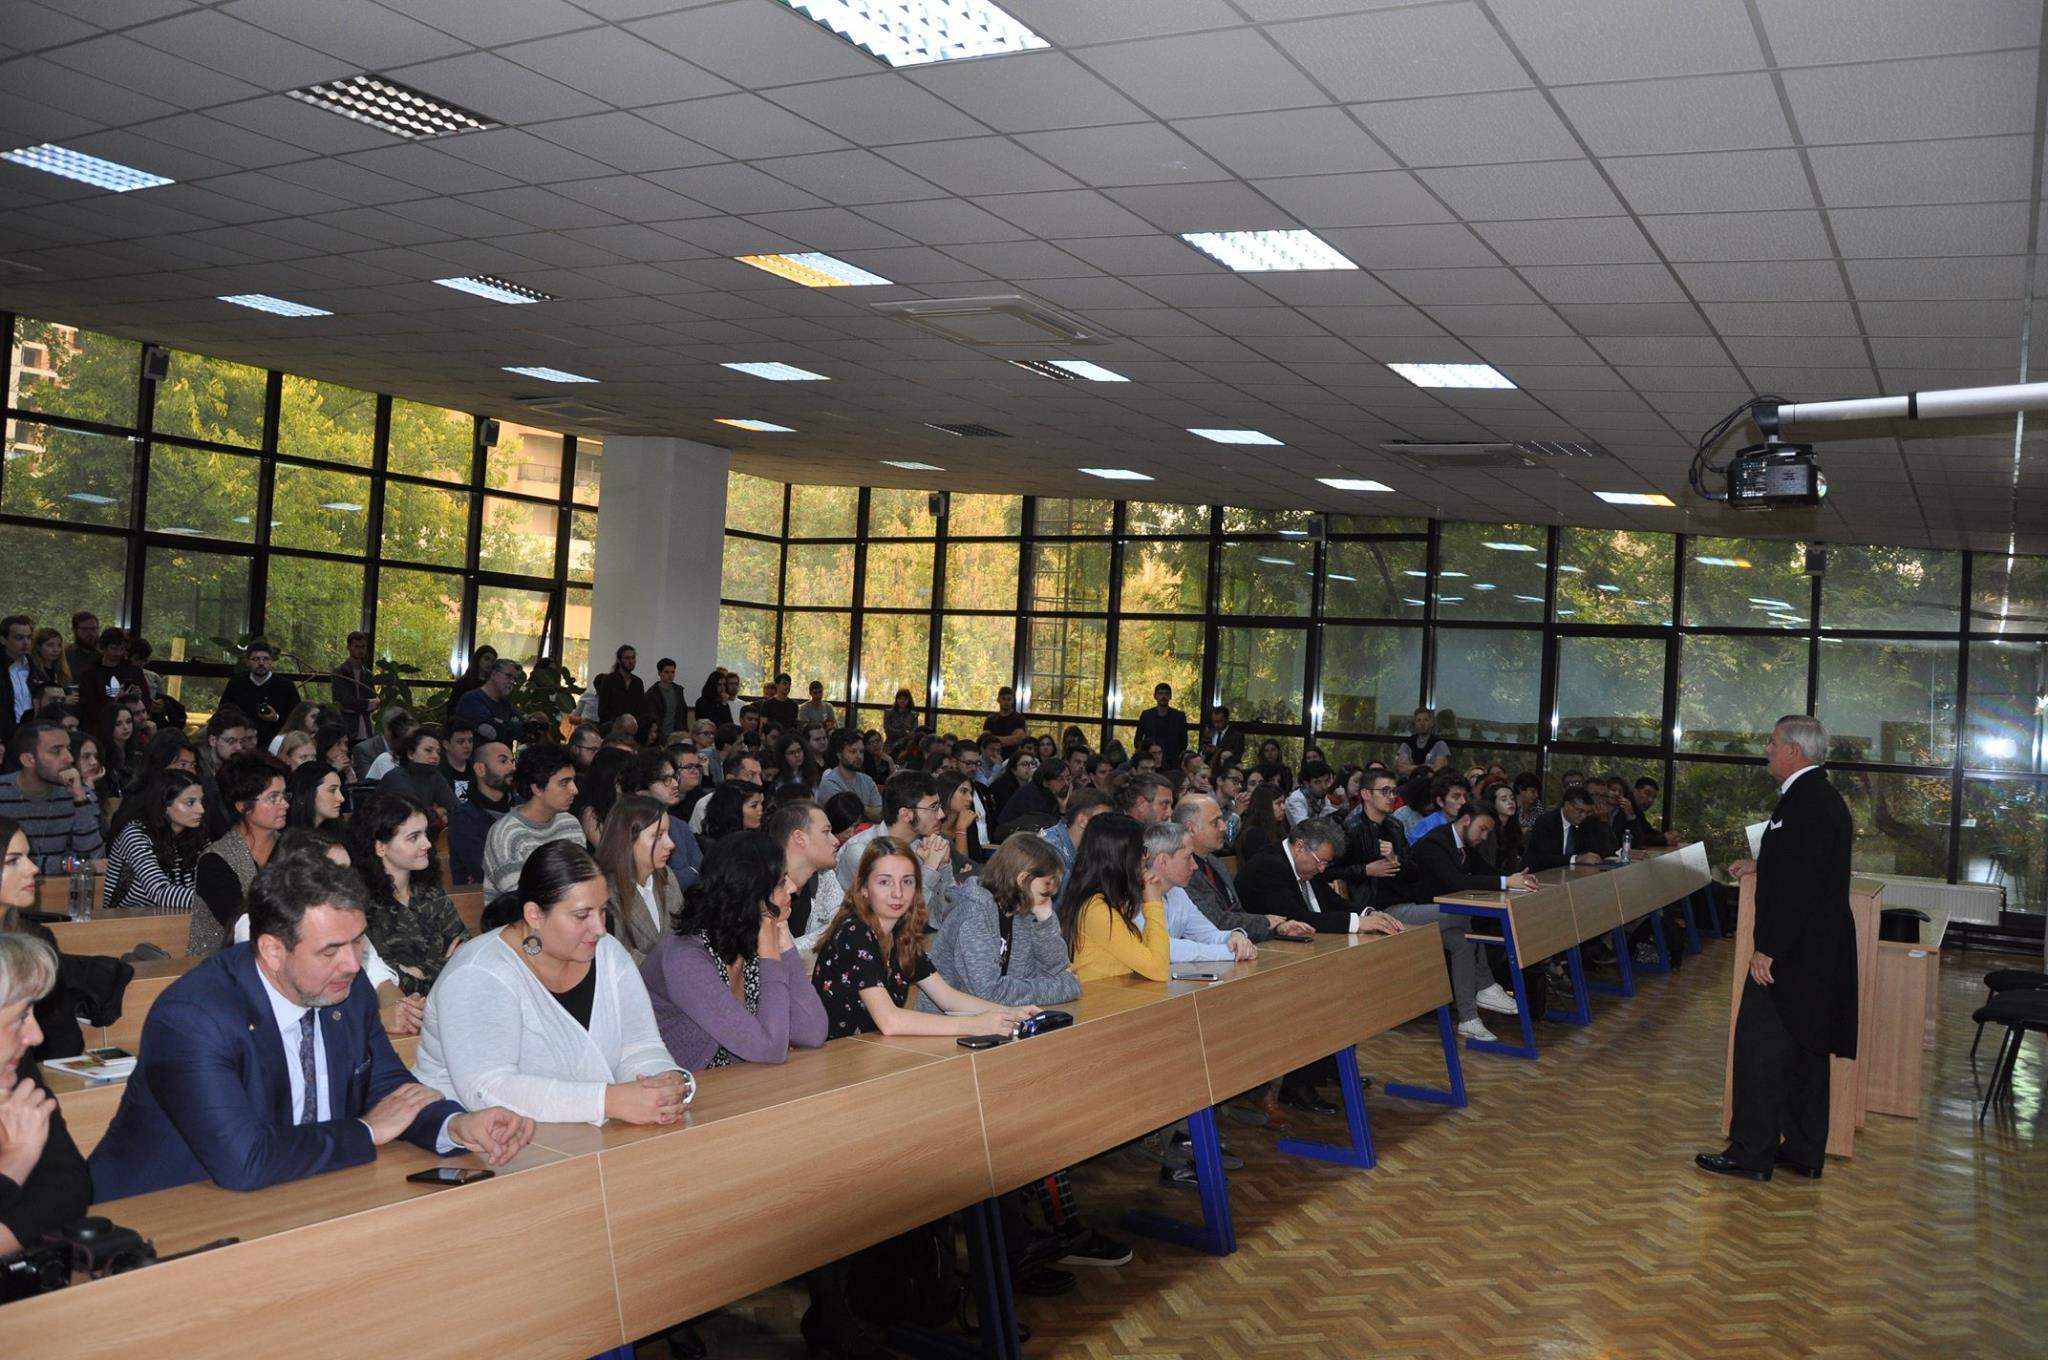 Rata de abandon din cadrul Universităților din România, în continuă scădere: ”Nu a mai fost nevoie să plătim chiria”